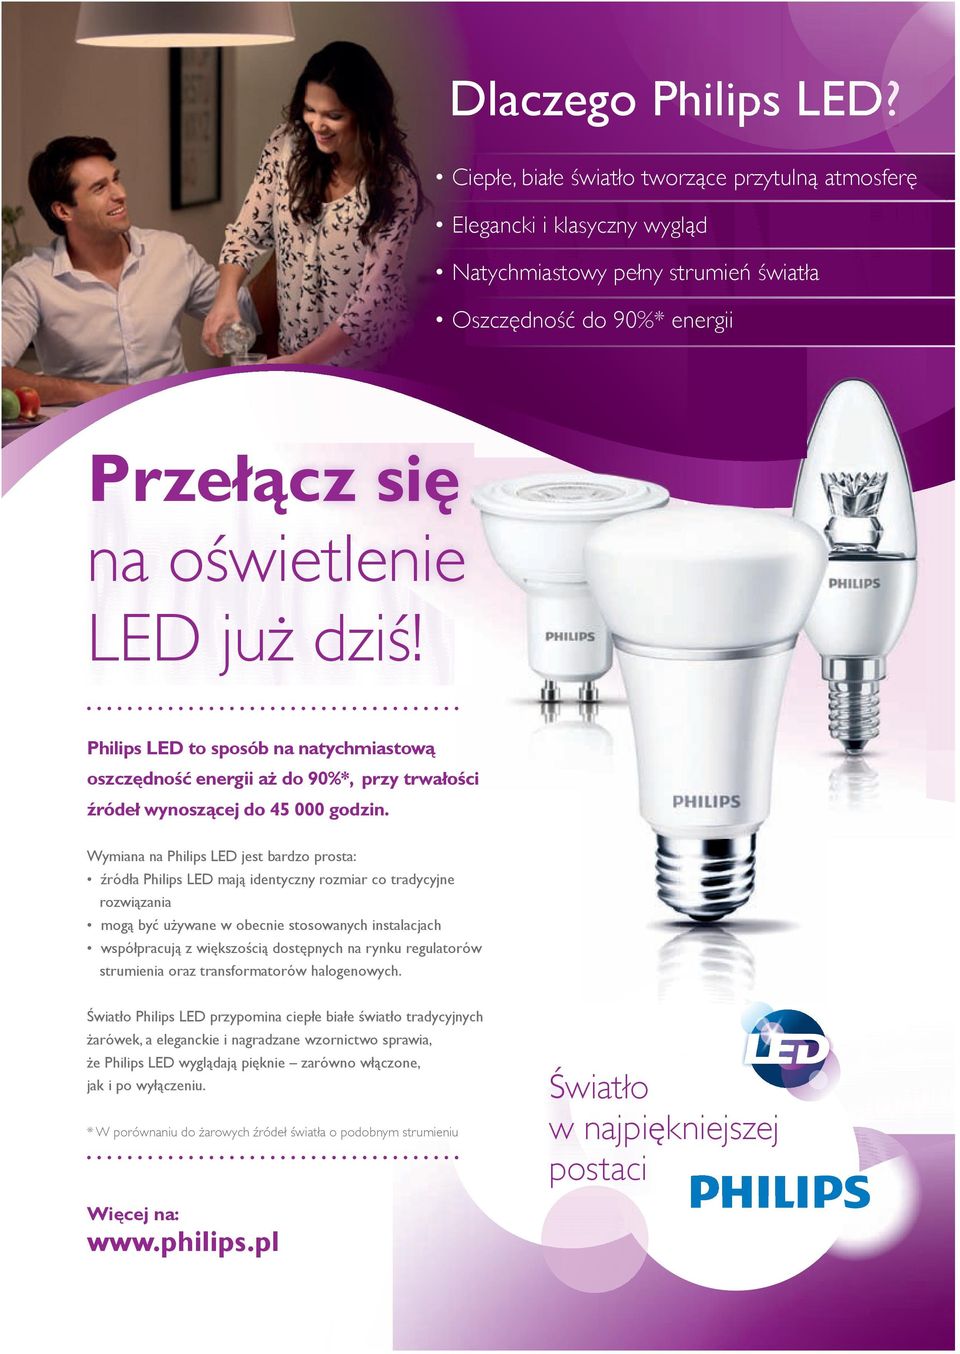 Philips LED to sposób na natychmiastową oszczędność energii aż do 90%*, przy trwałości źródeł wynoszącej do 45 000 godzin.